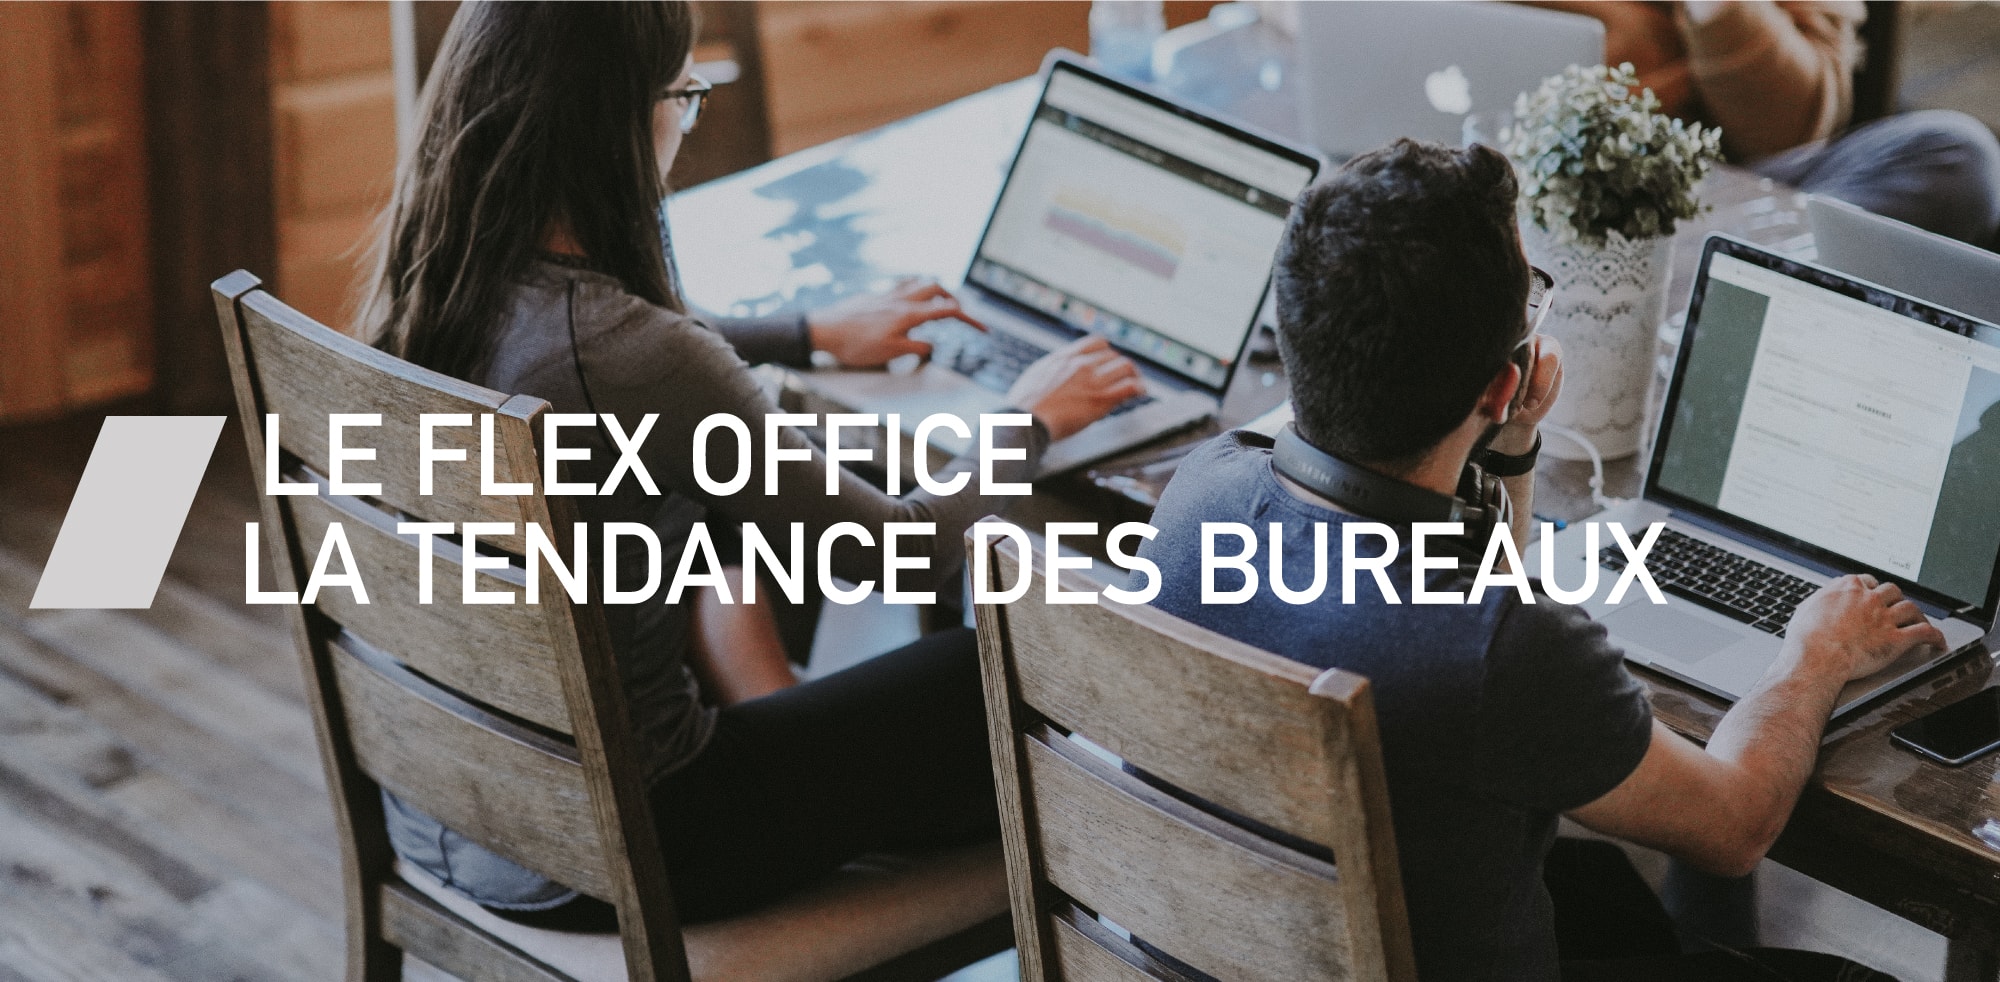 Le flex office : nouvelle tendance des bureaux